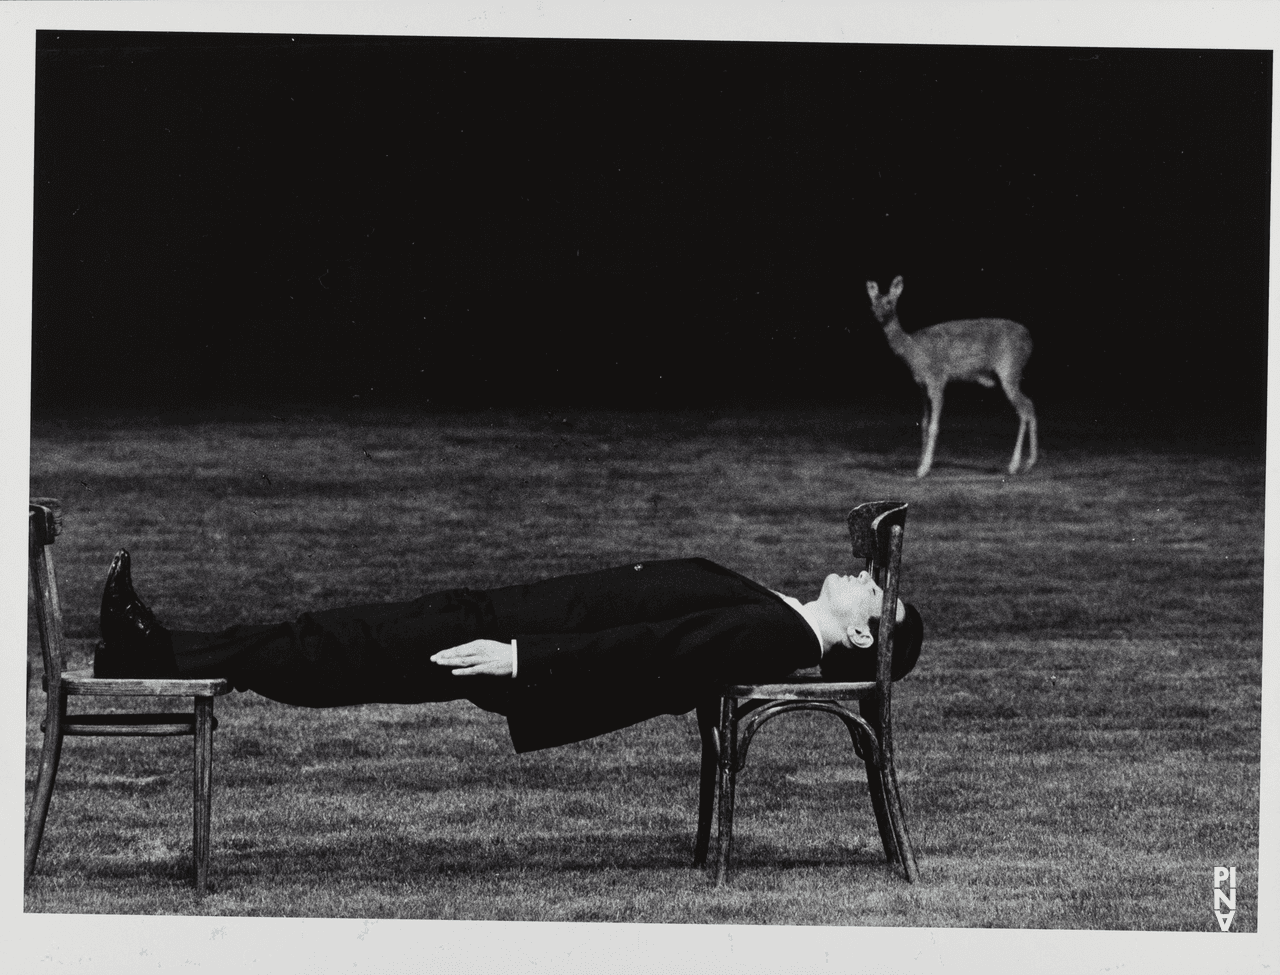 Antonio Carallo in « 1980 – Une pièce de Pina Bausch » de Pina Bausch